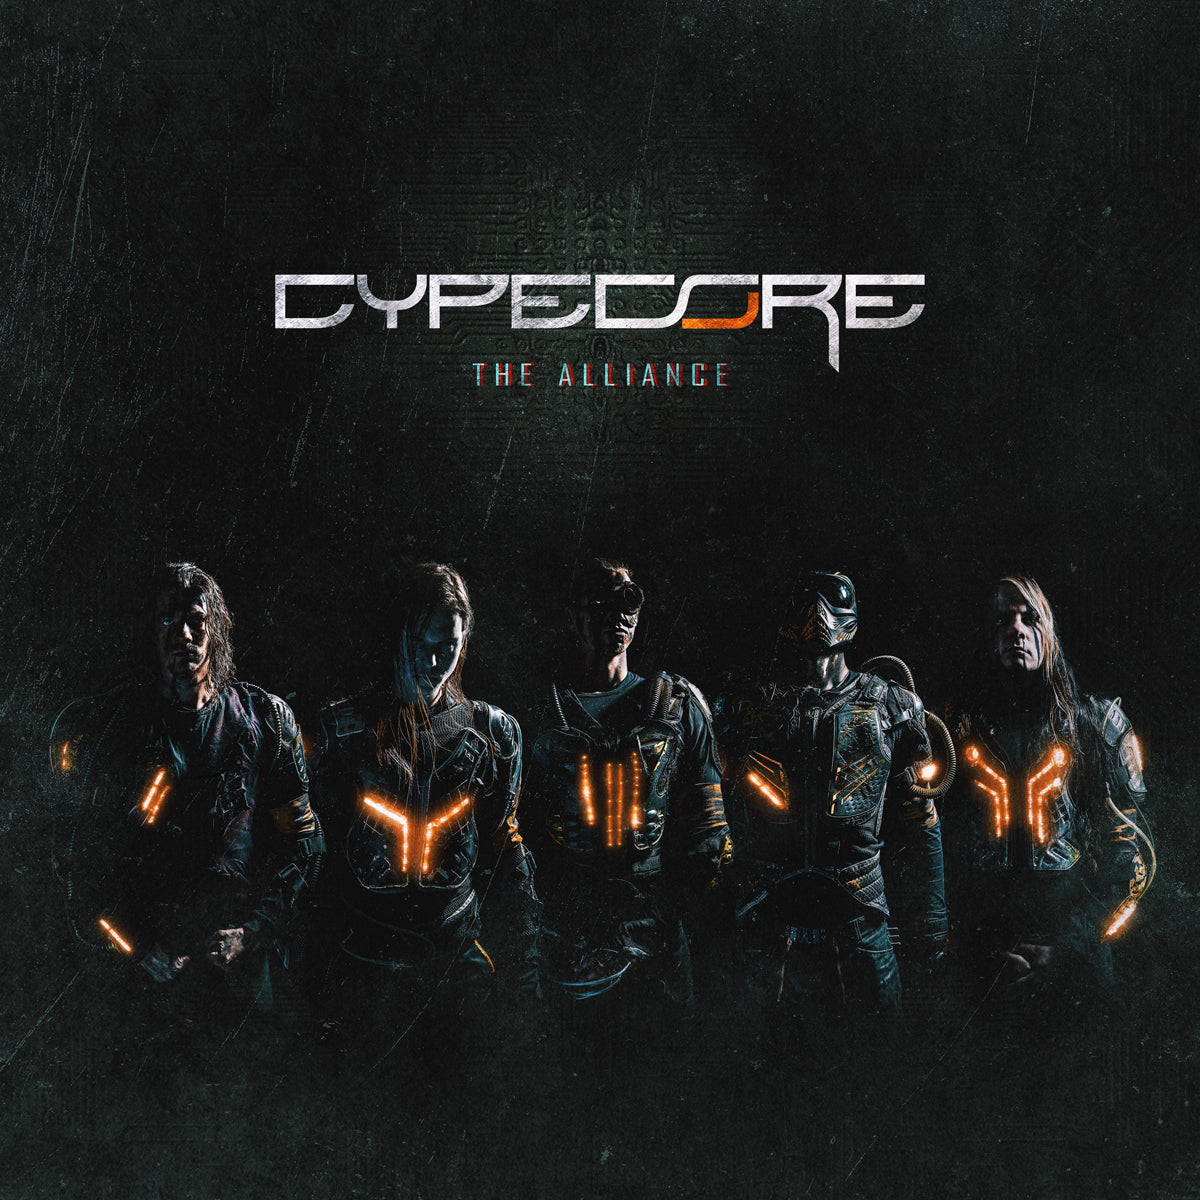 Cypecore - The Alliance Coloured Vinyl